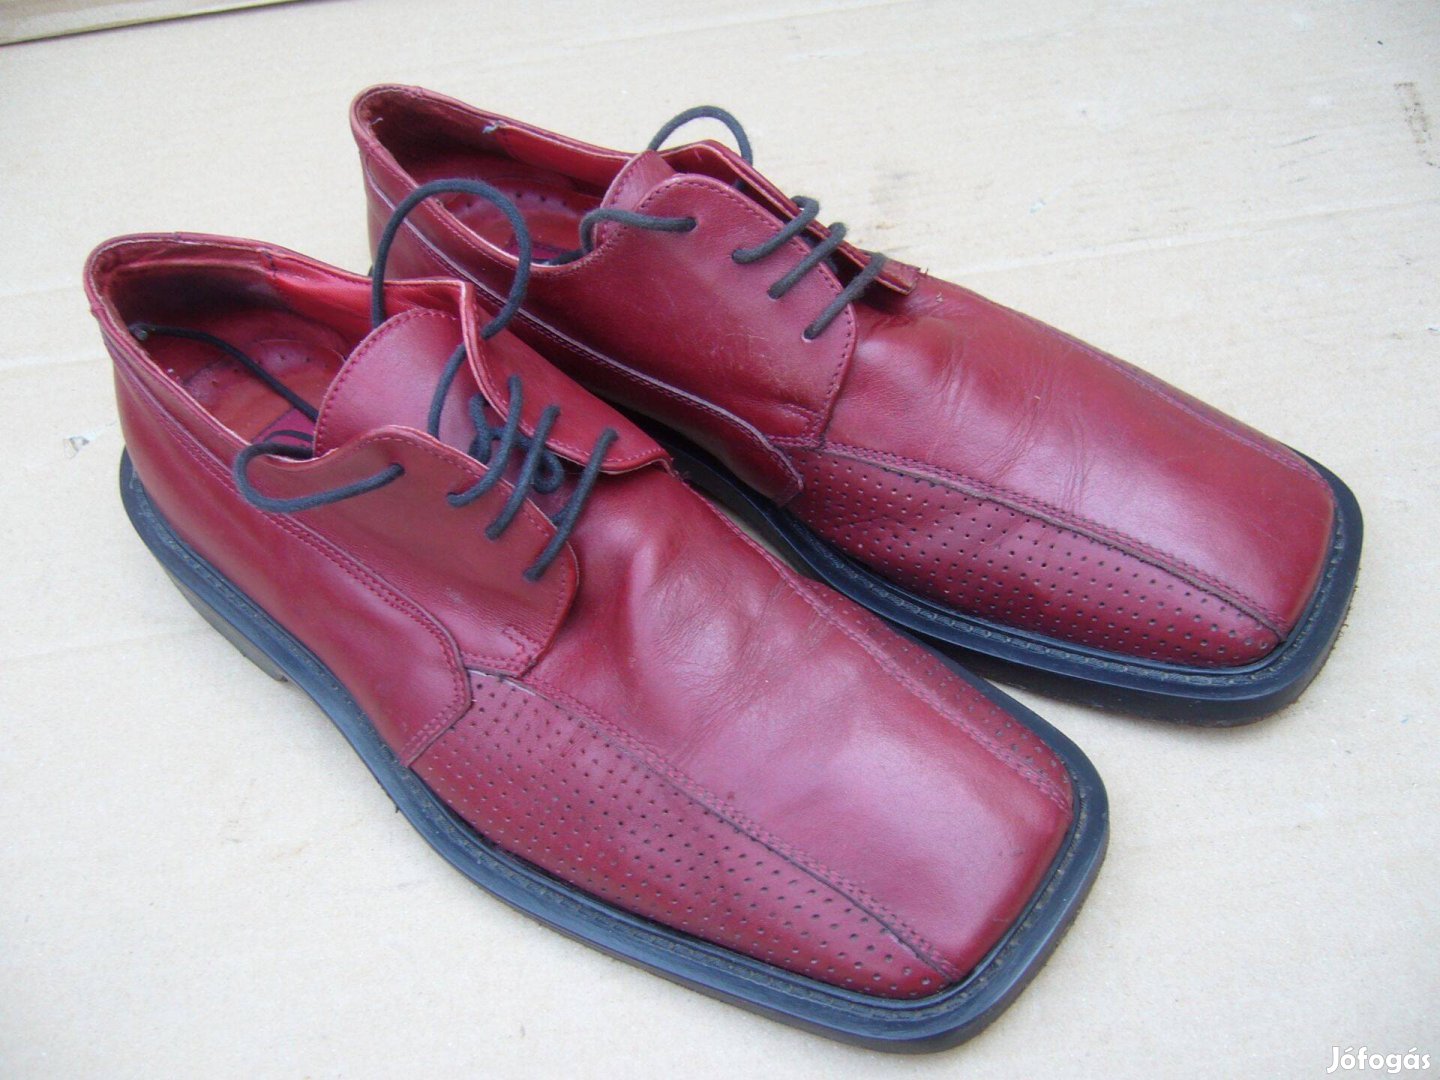 43-as férfi cipő különleges vörös színben